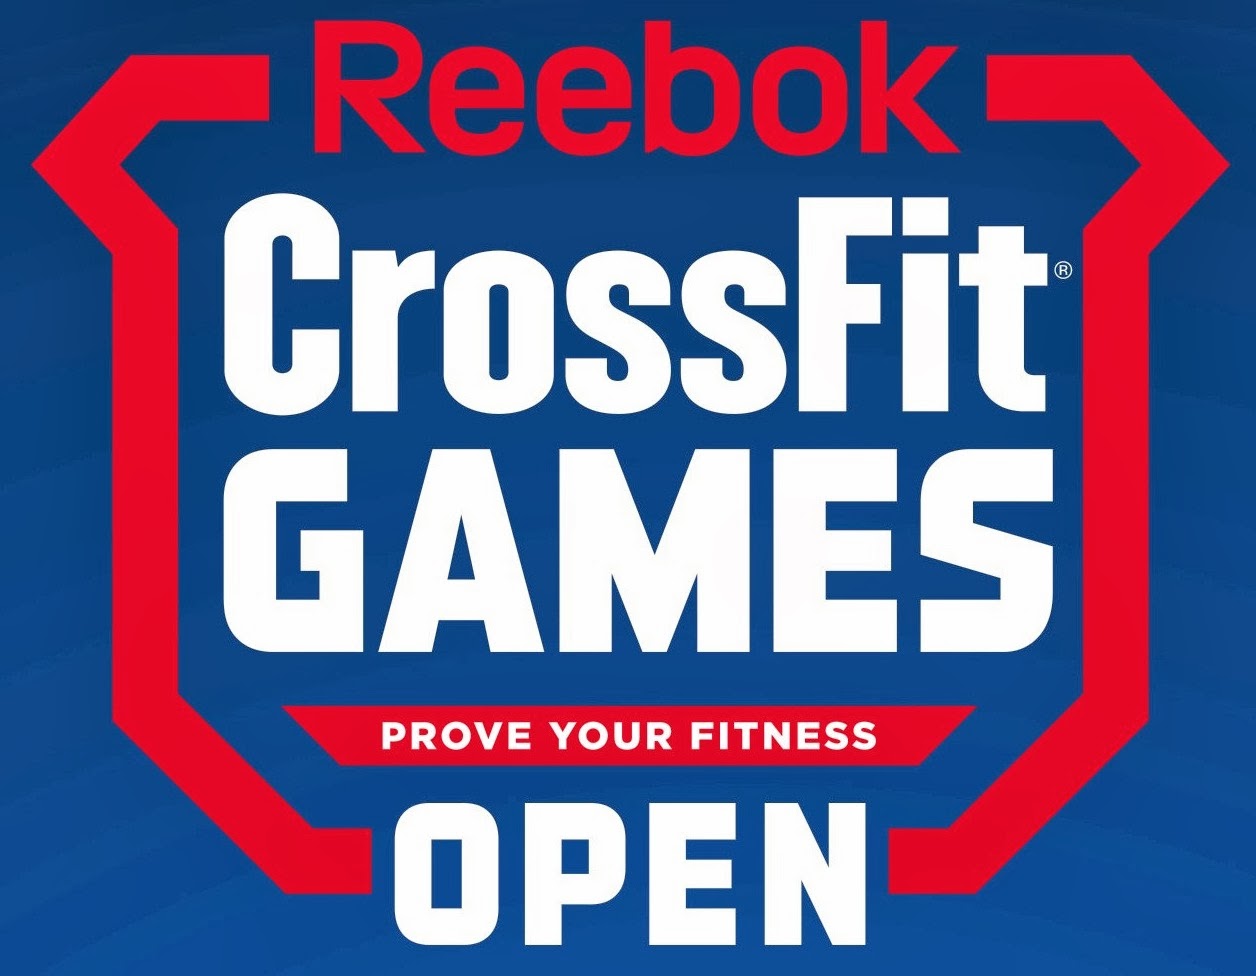 reebok crossfit open 2019